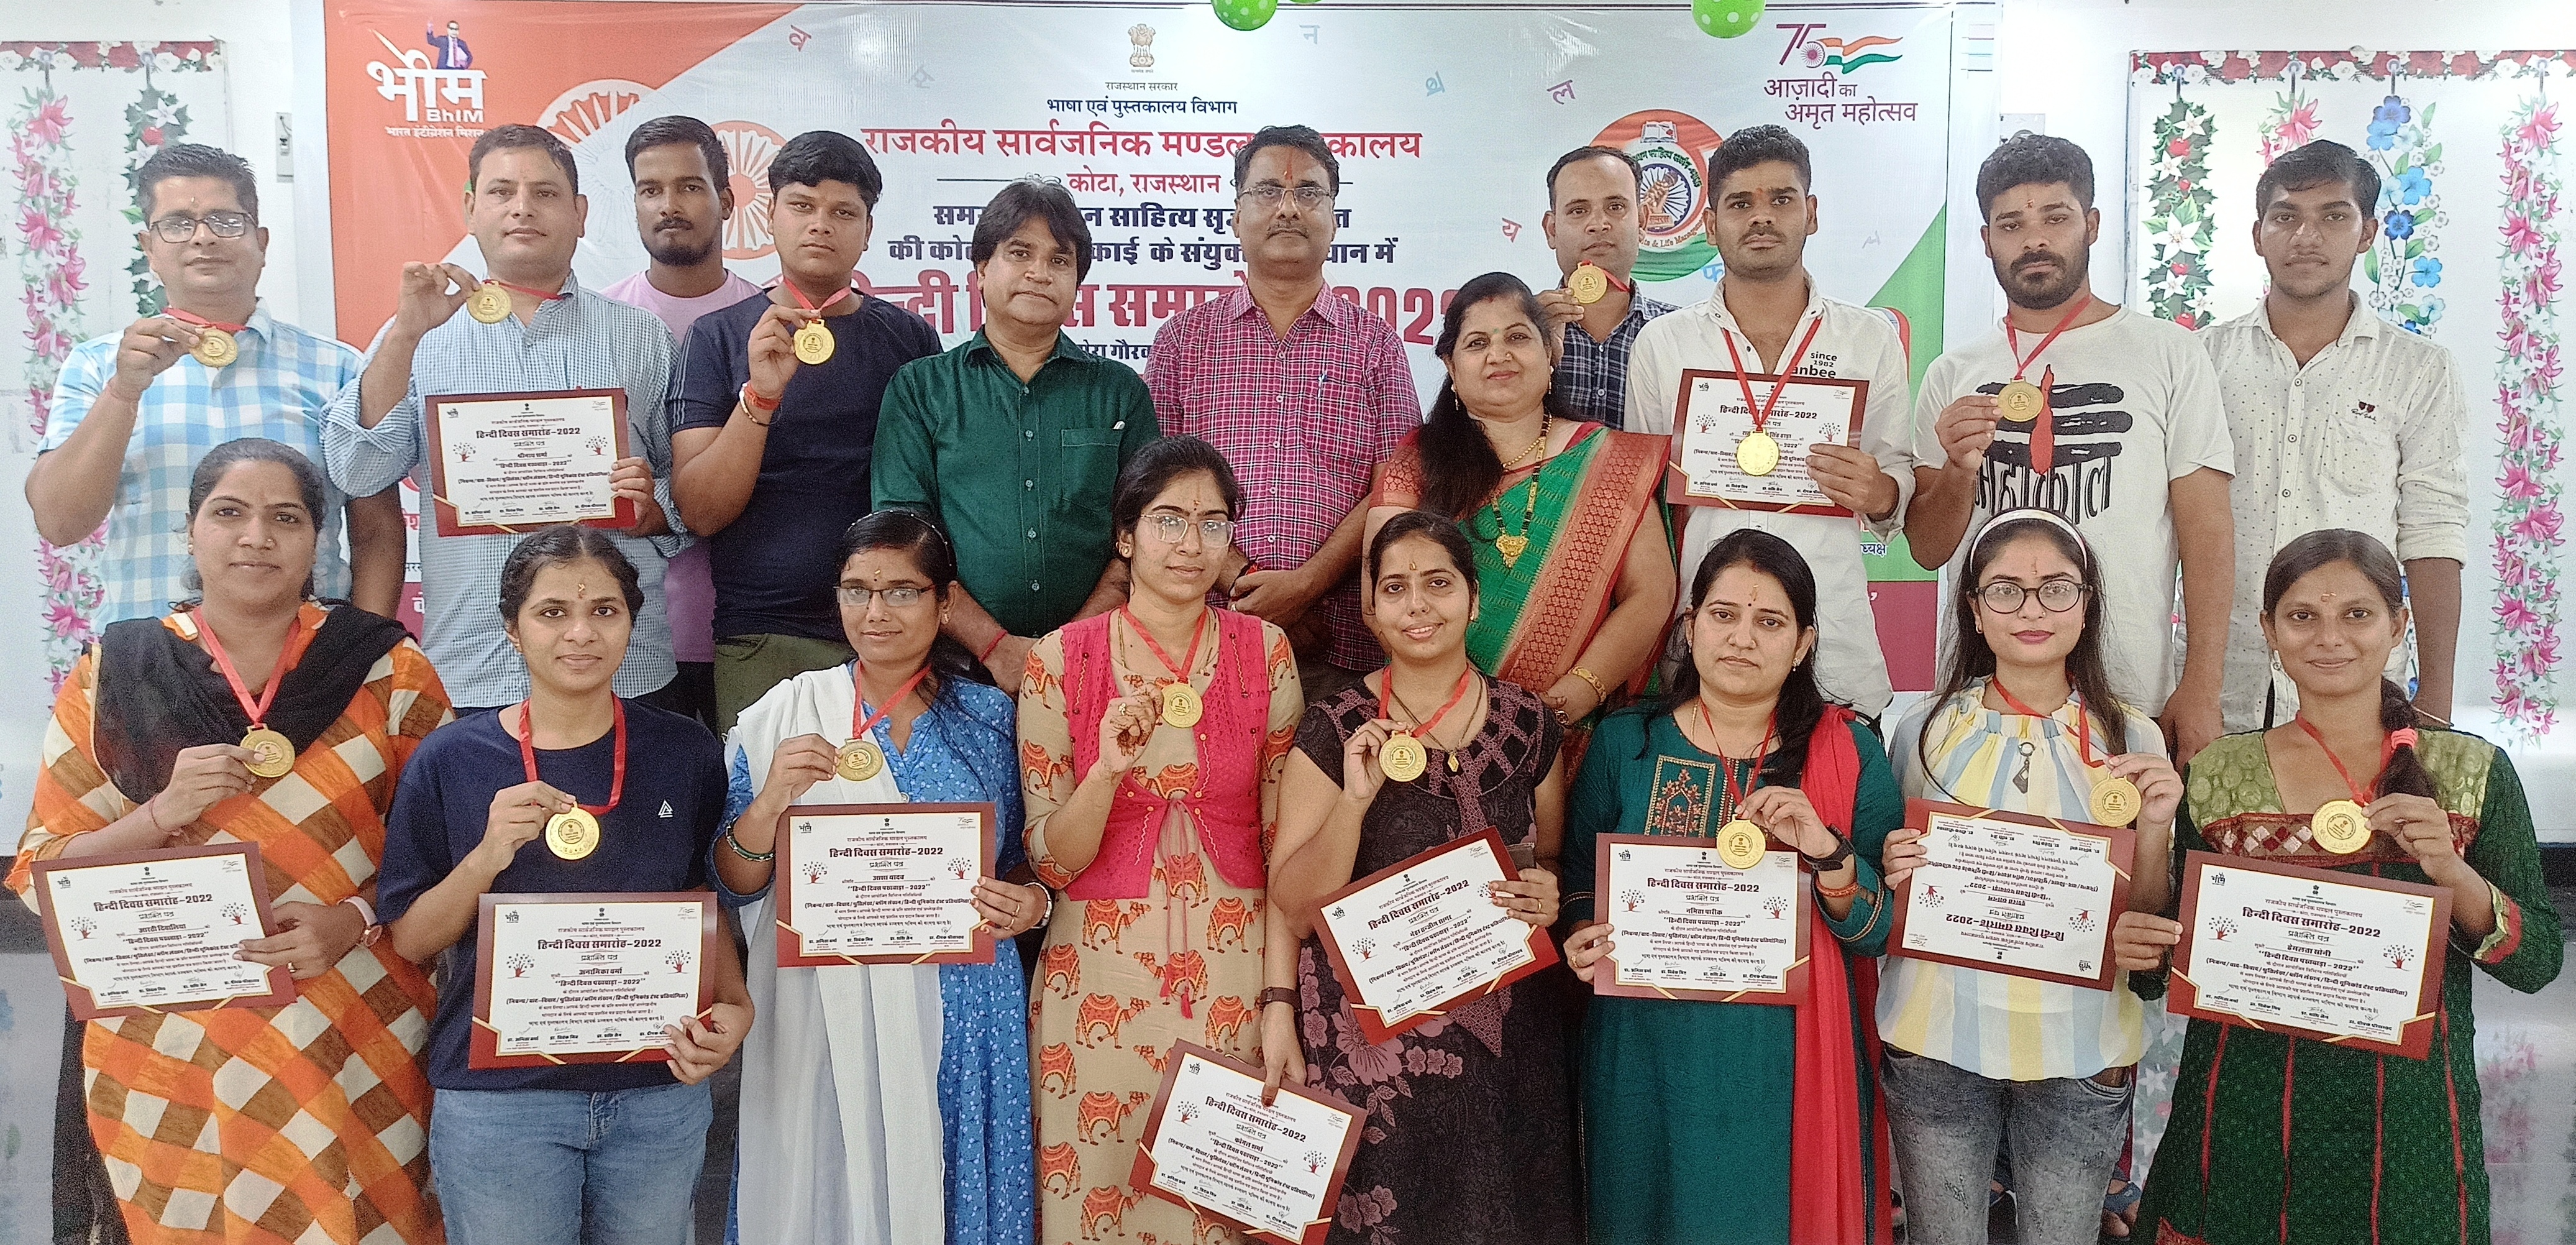 हिन्दी पखवाडे के समापन समारोह मे विभिन्न प्रतियोगिताओं के 21 विजेताओं का सम्मान